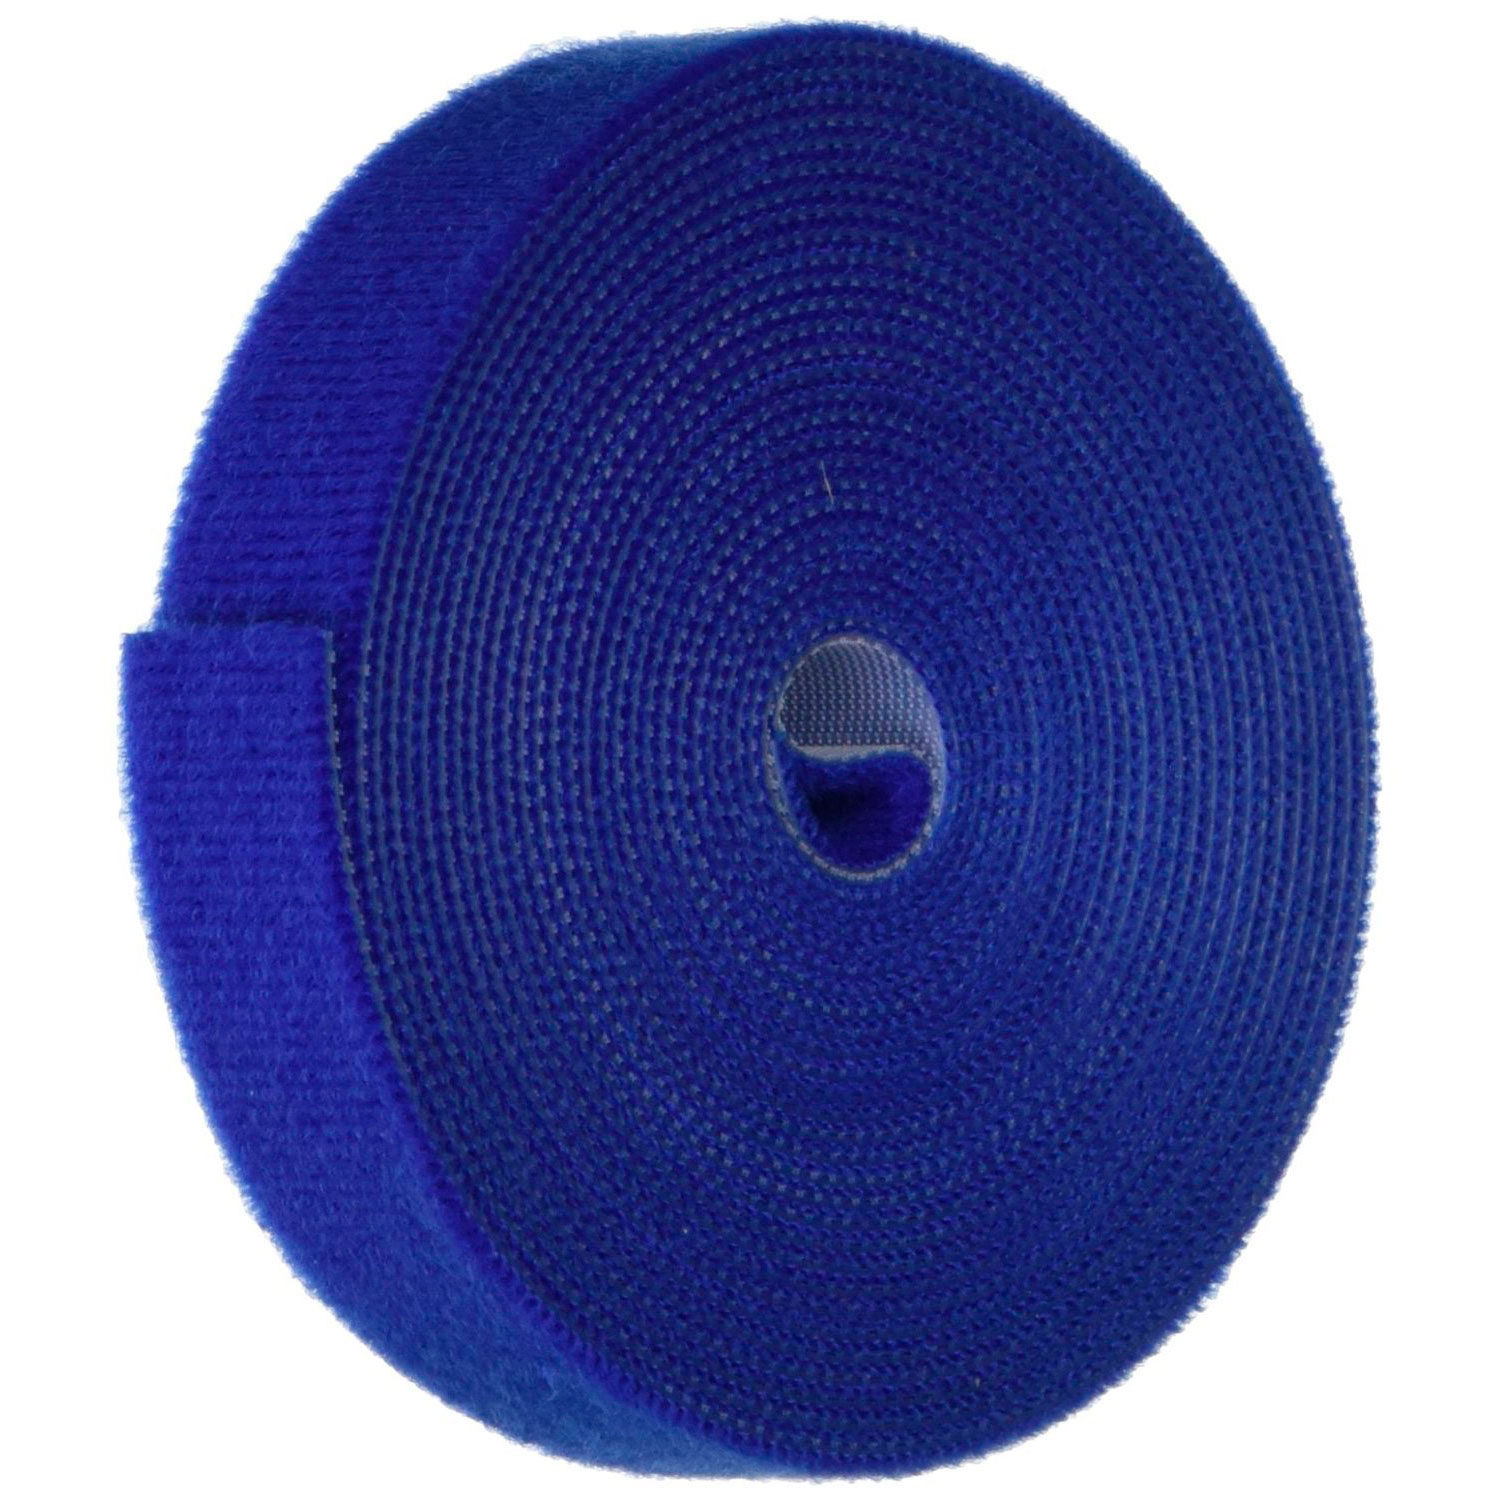 purple velcro tape